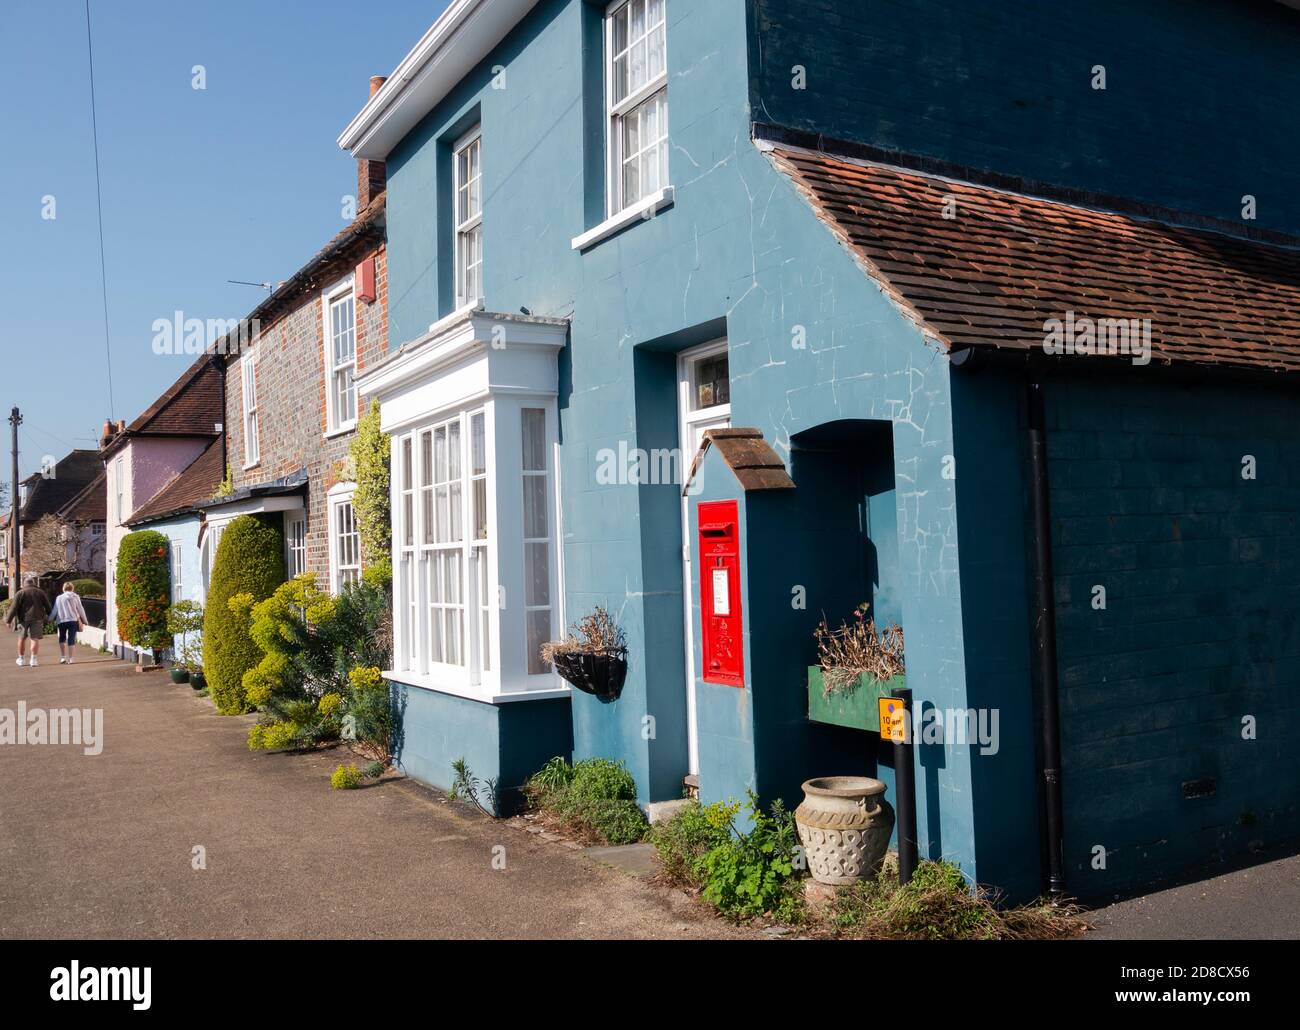 Un cottage con una casella postale costruita nelle sue pareti esterne, nel villaggio di Portchester, Hampshire, Inghilterra Foto Stock